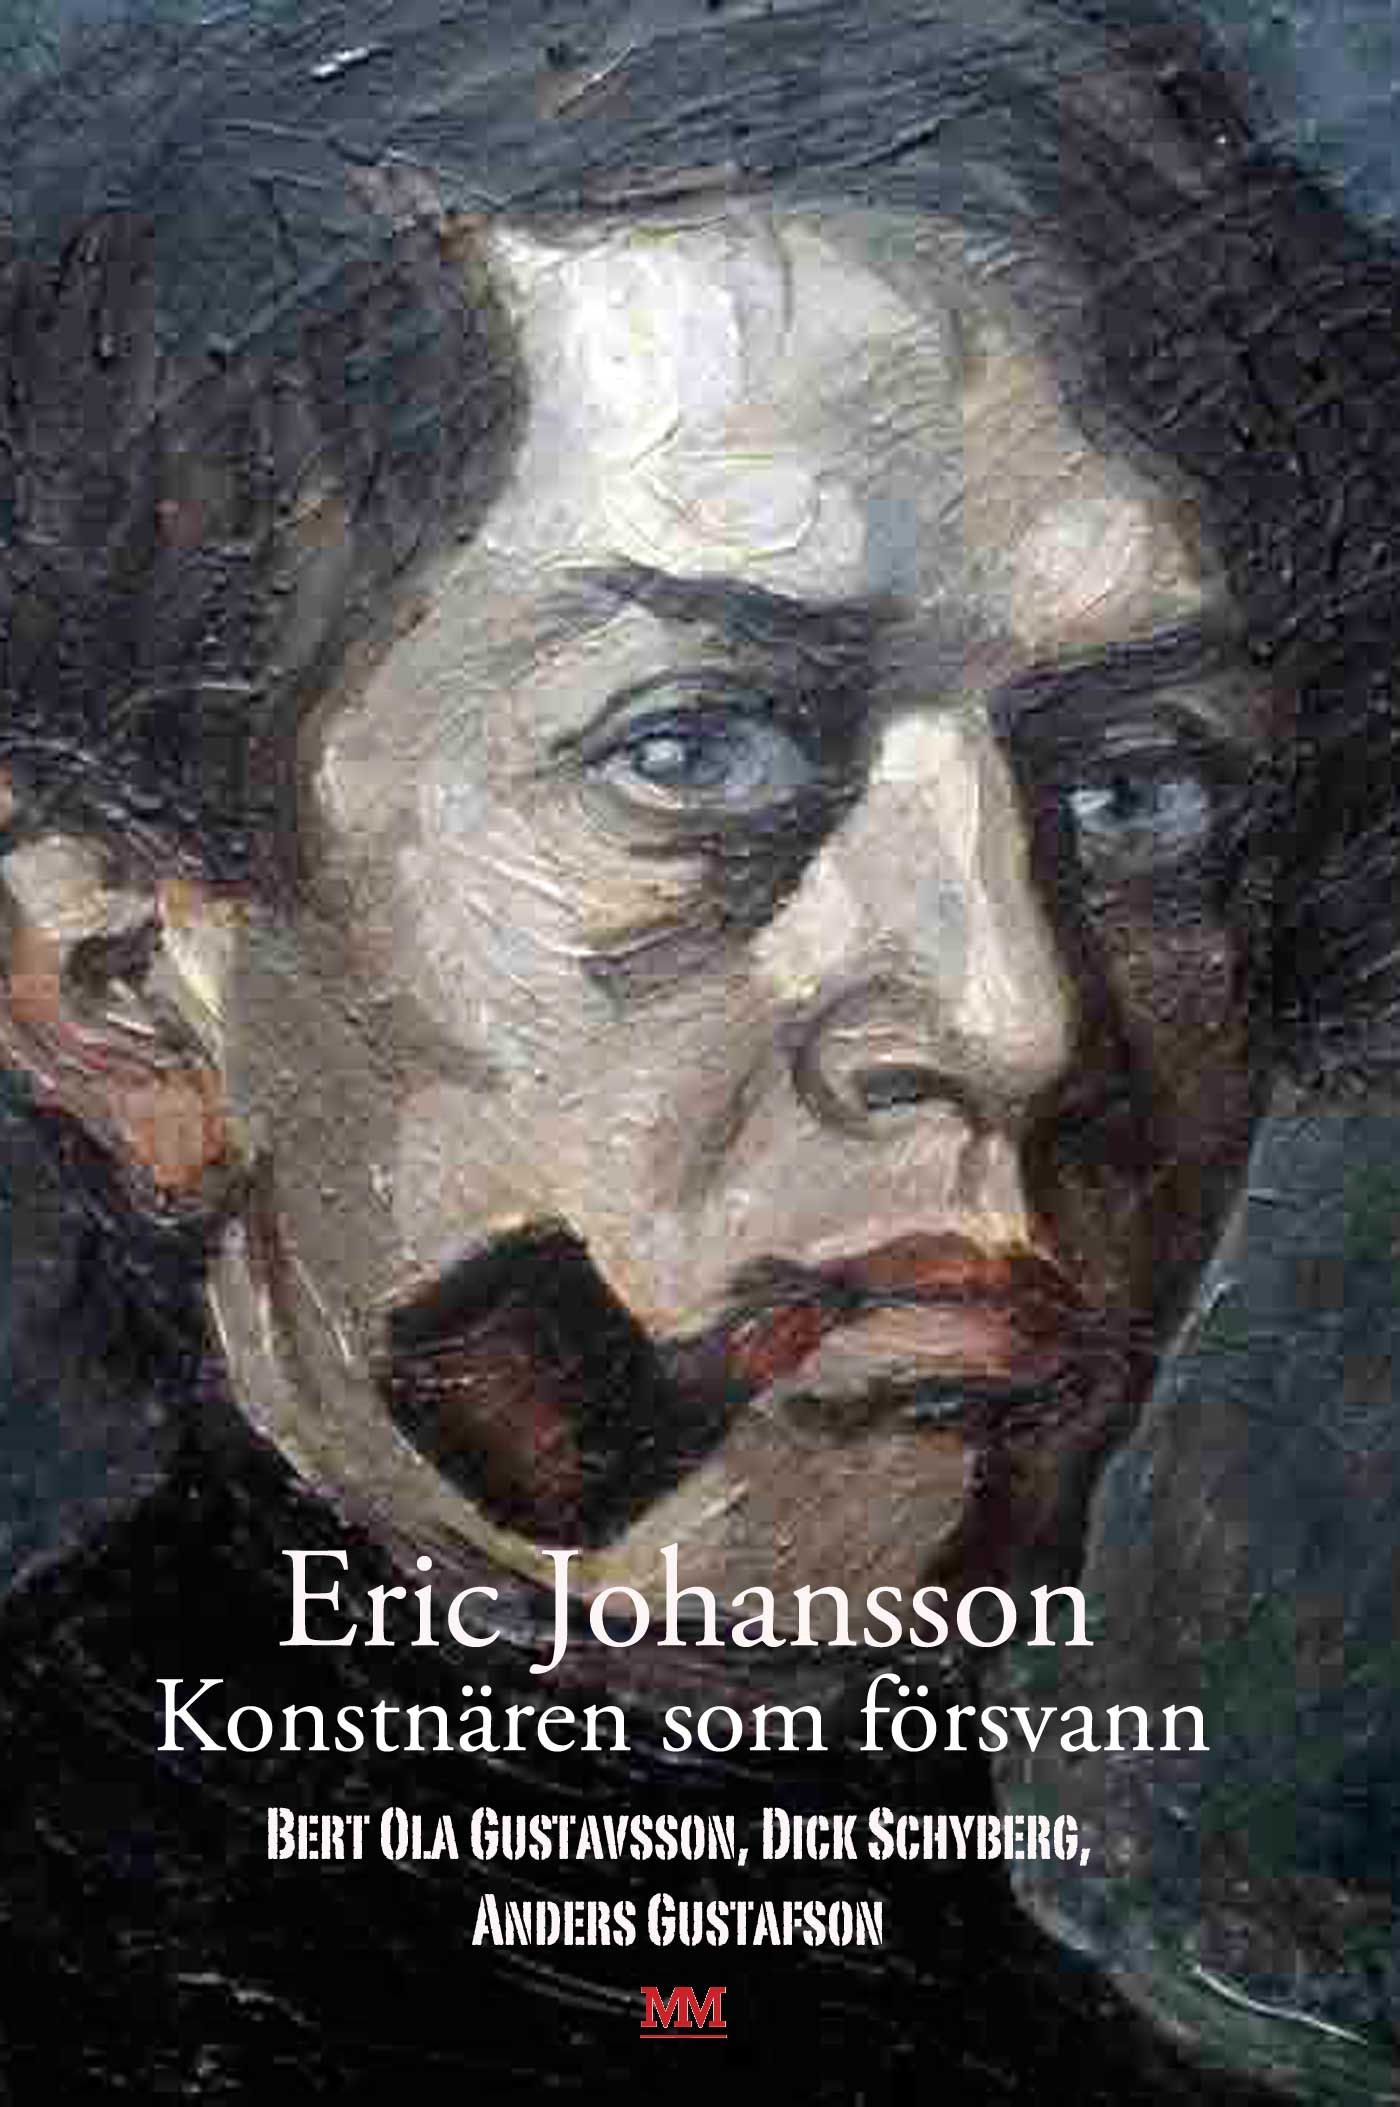 Eric Johansson - konstnären som försvann, e-bok av Anders Gustafson, Bert Ola Gustavsson, Dick Schyberg